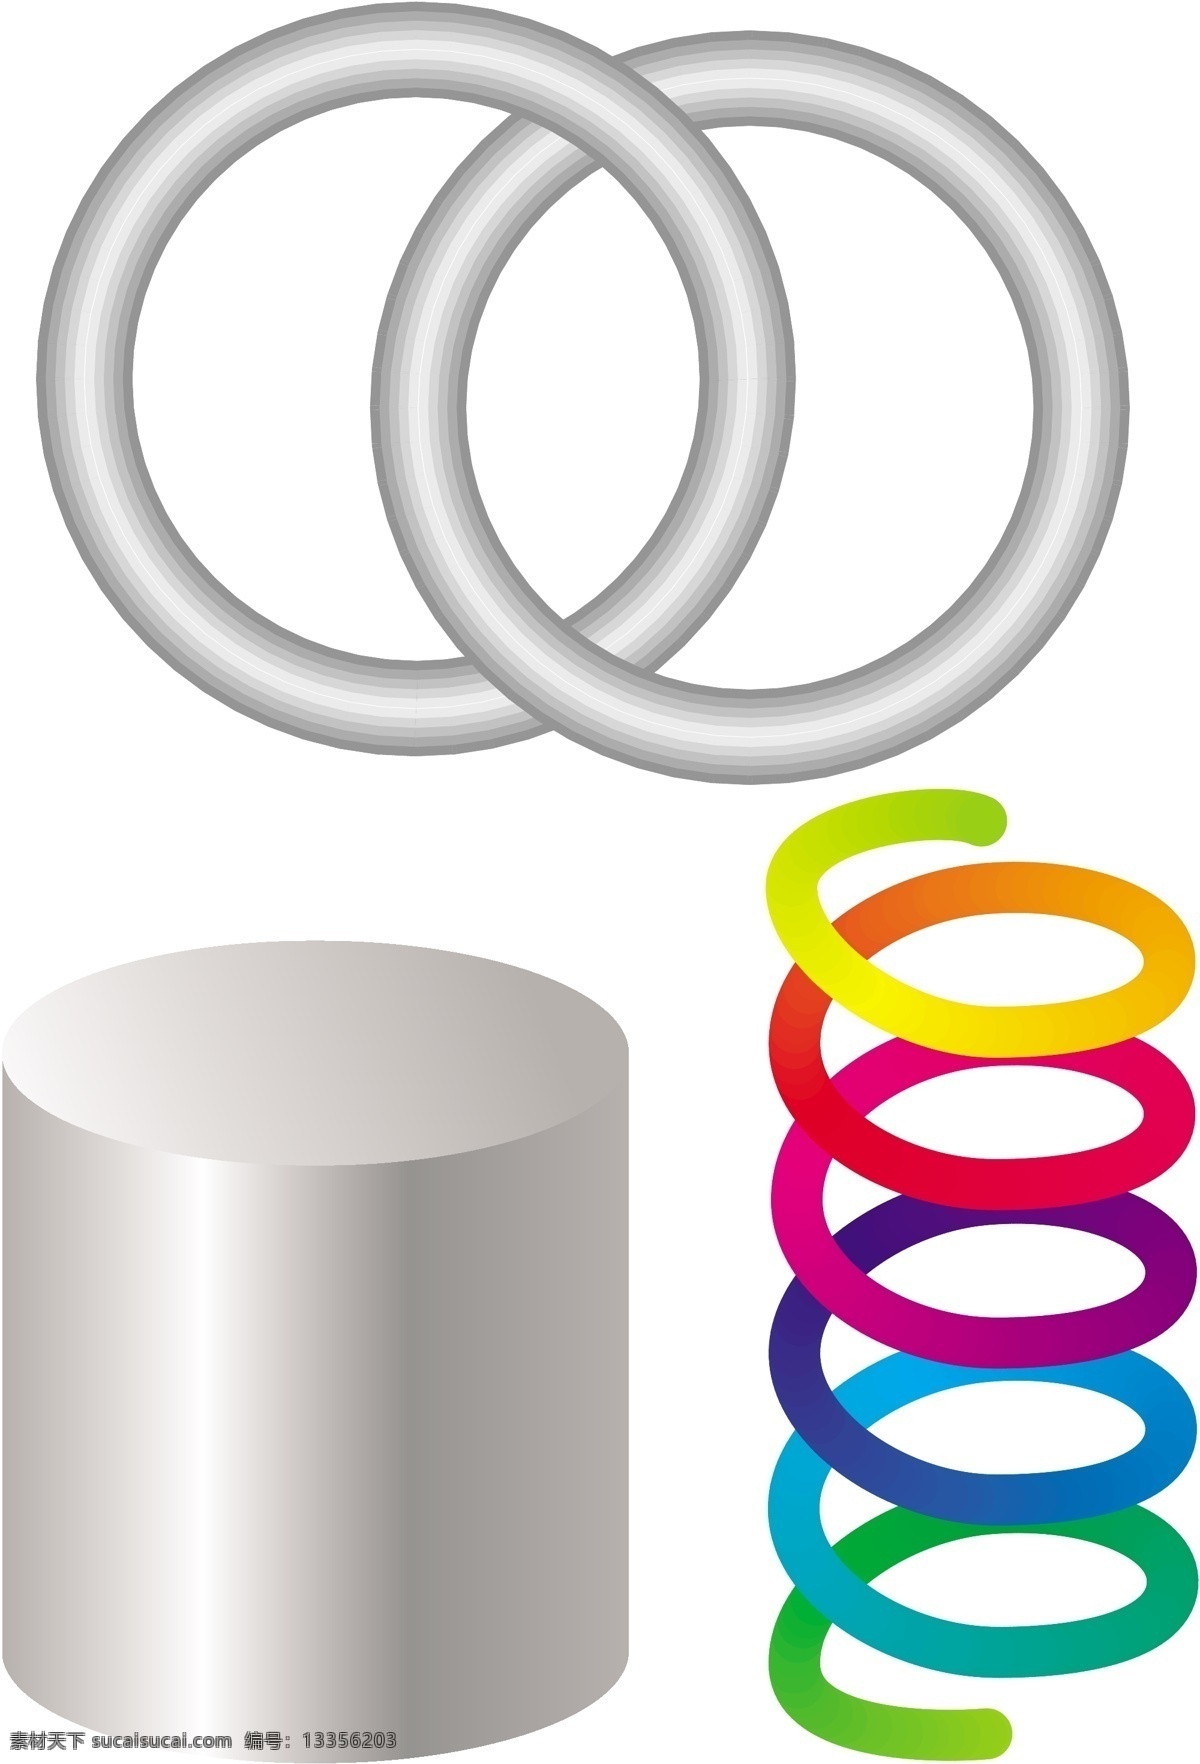 圆柱 套环 弹簧 彩色弹簧 几何图形 学习素材 球体素材 圆柱素材 几何素材 创意素材图片 3d设计 3d图形 生活百科 学习用品